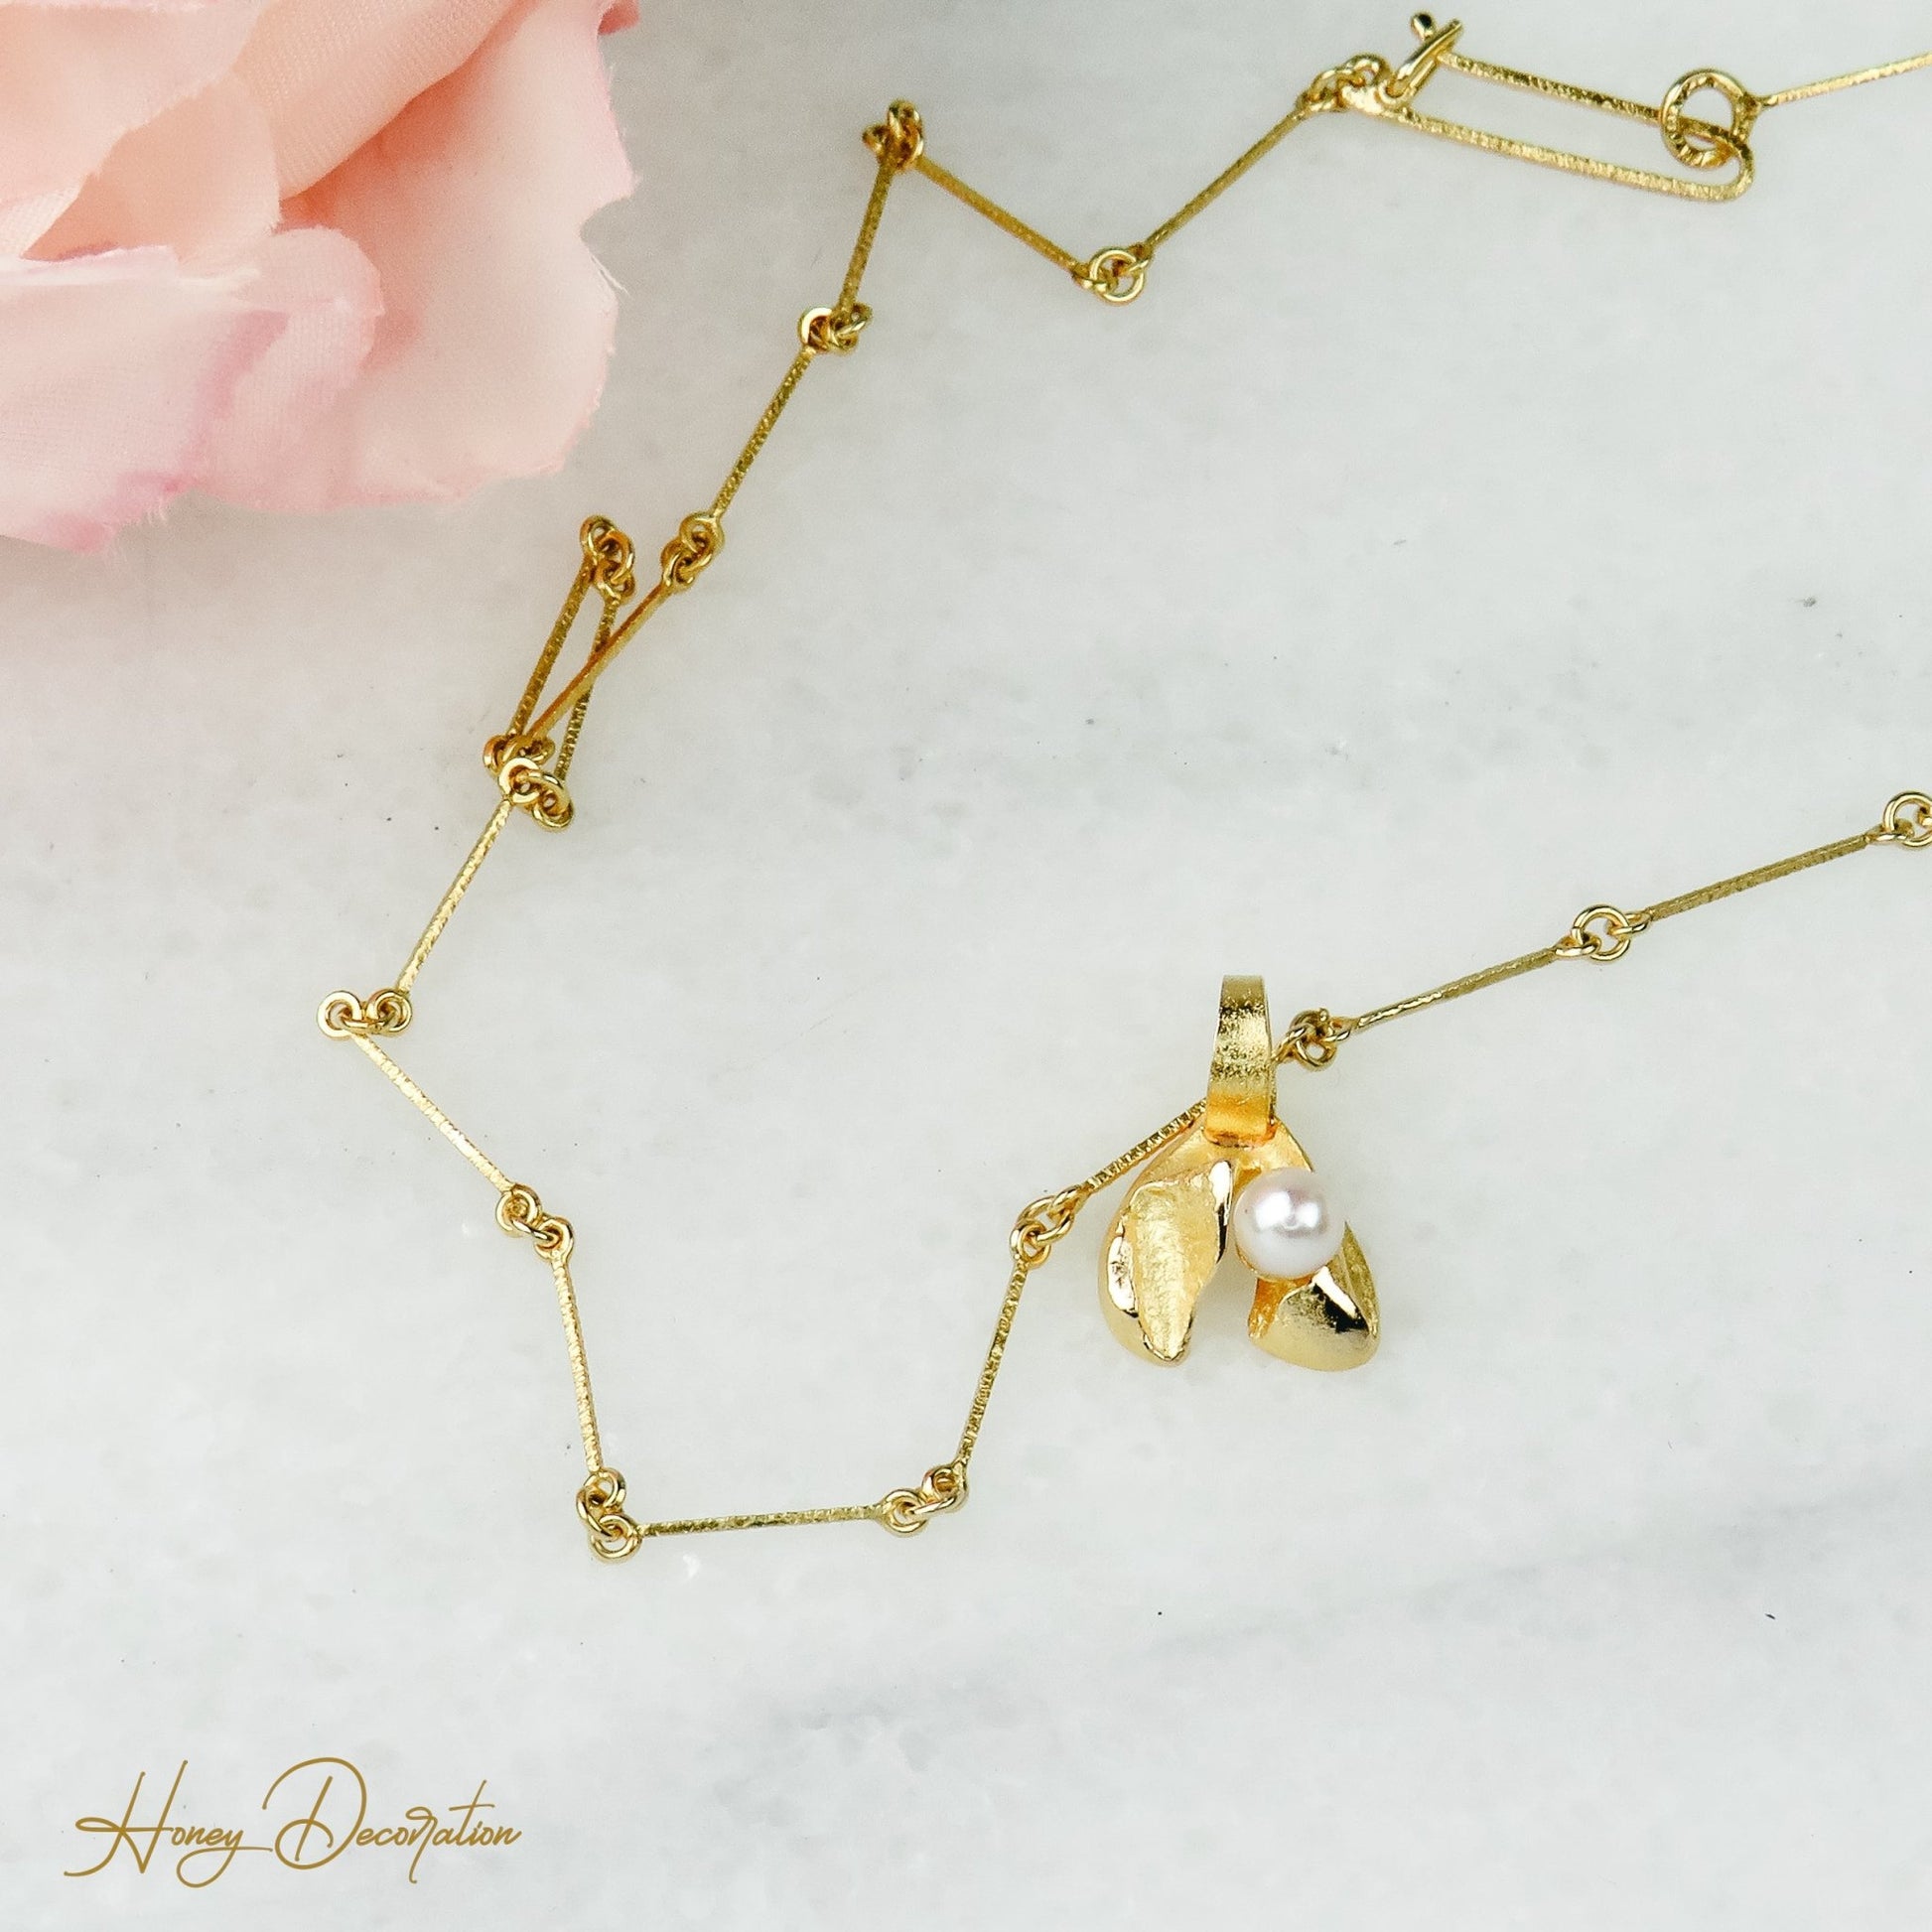 Lapponia Halskette mit Perlenanhänger - Honey Decoration